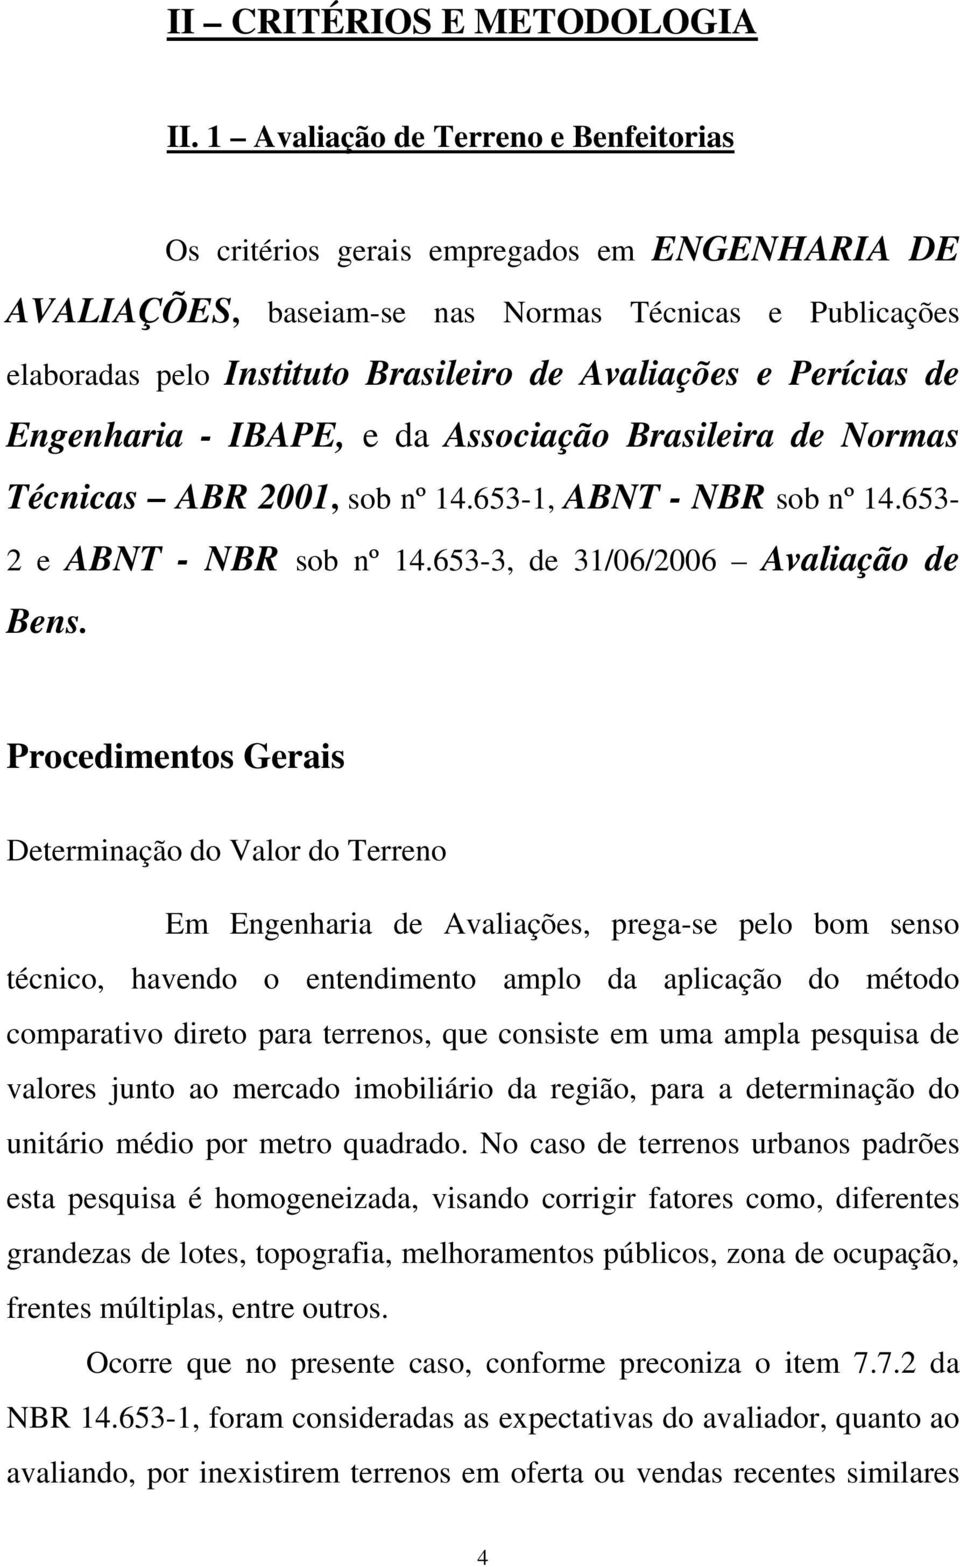 Perícias de Engenharia - IBAPE, e da Associação Brasileira de Normas Técnicas ABR 2001, sob nº 14.653-1, ABNT - NBR sob nº 14.653-2 e ABNT - NBR sob nº 14.653-3, de 31/06/2006 Avaliação de Bens.